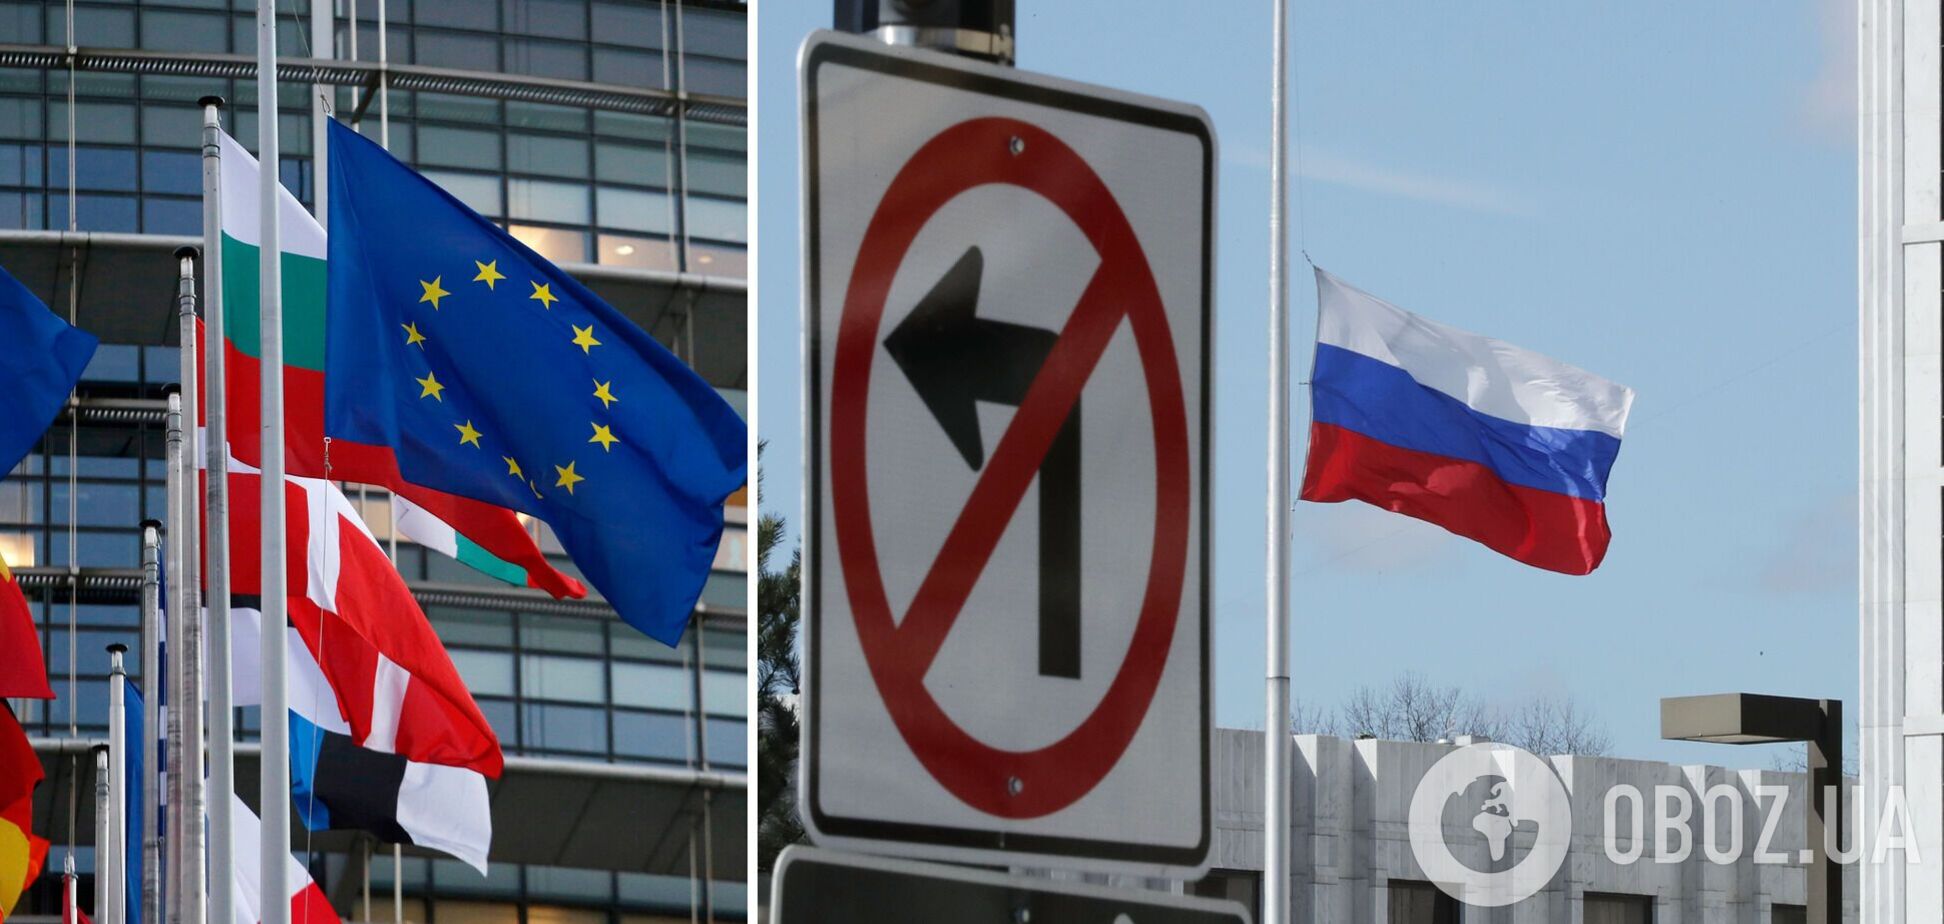 ЕС требует от России соблюдения территориальной целостности Украины